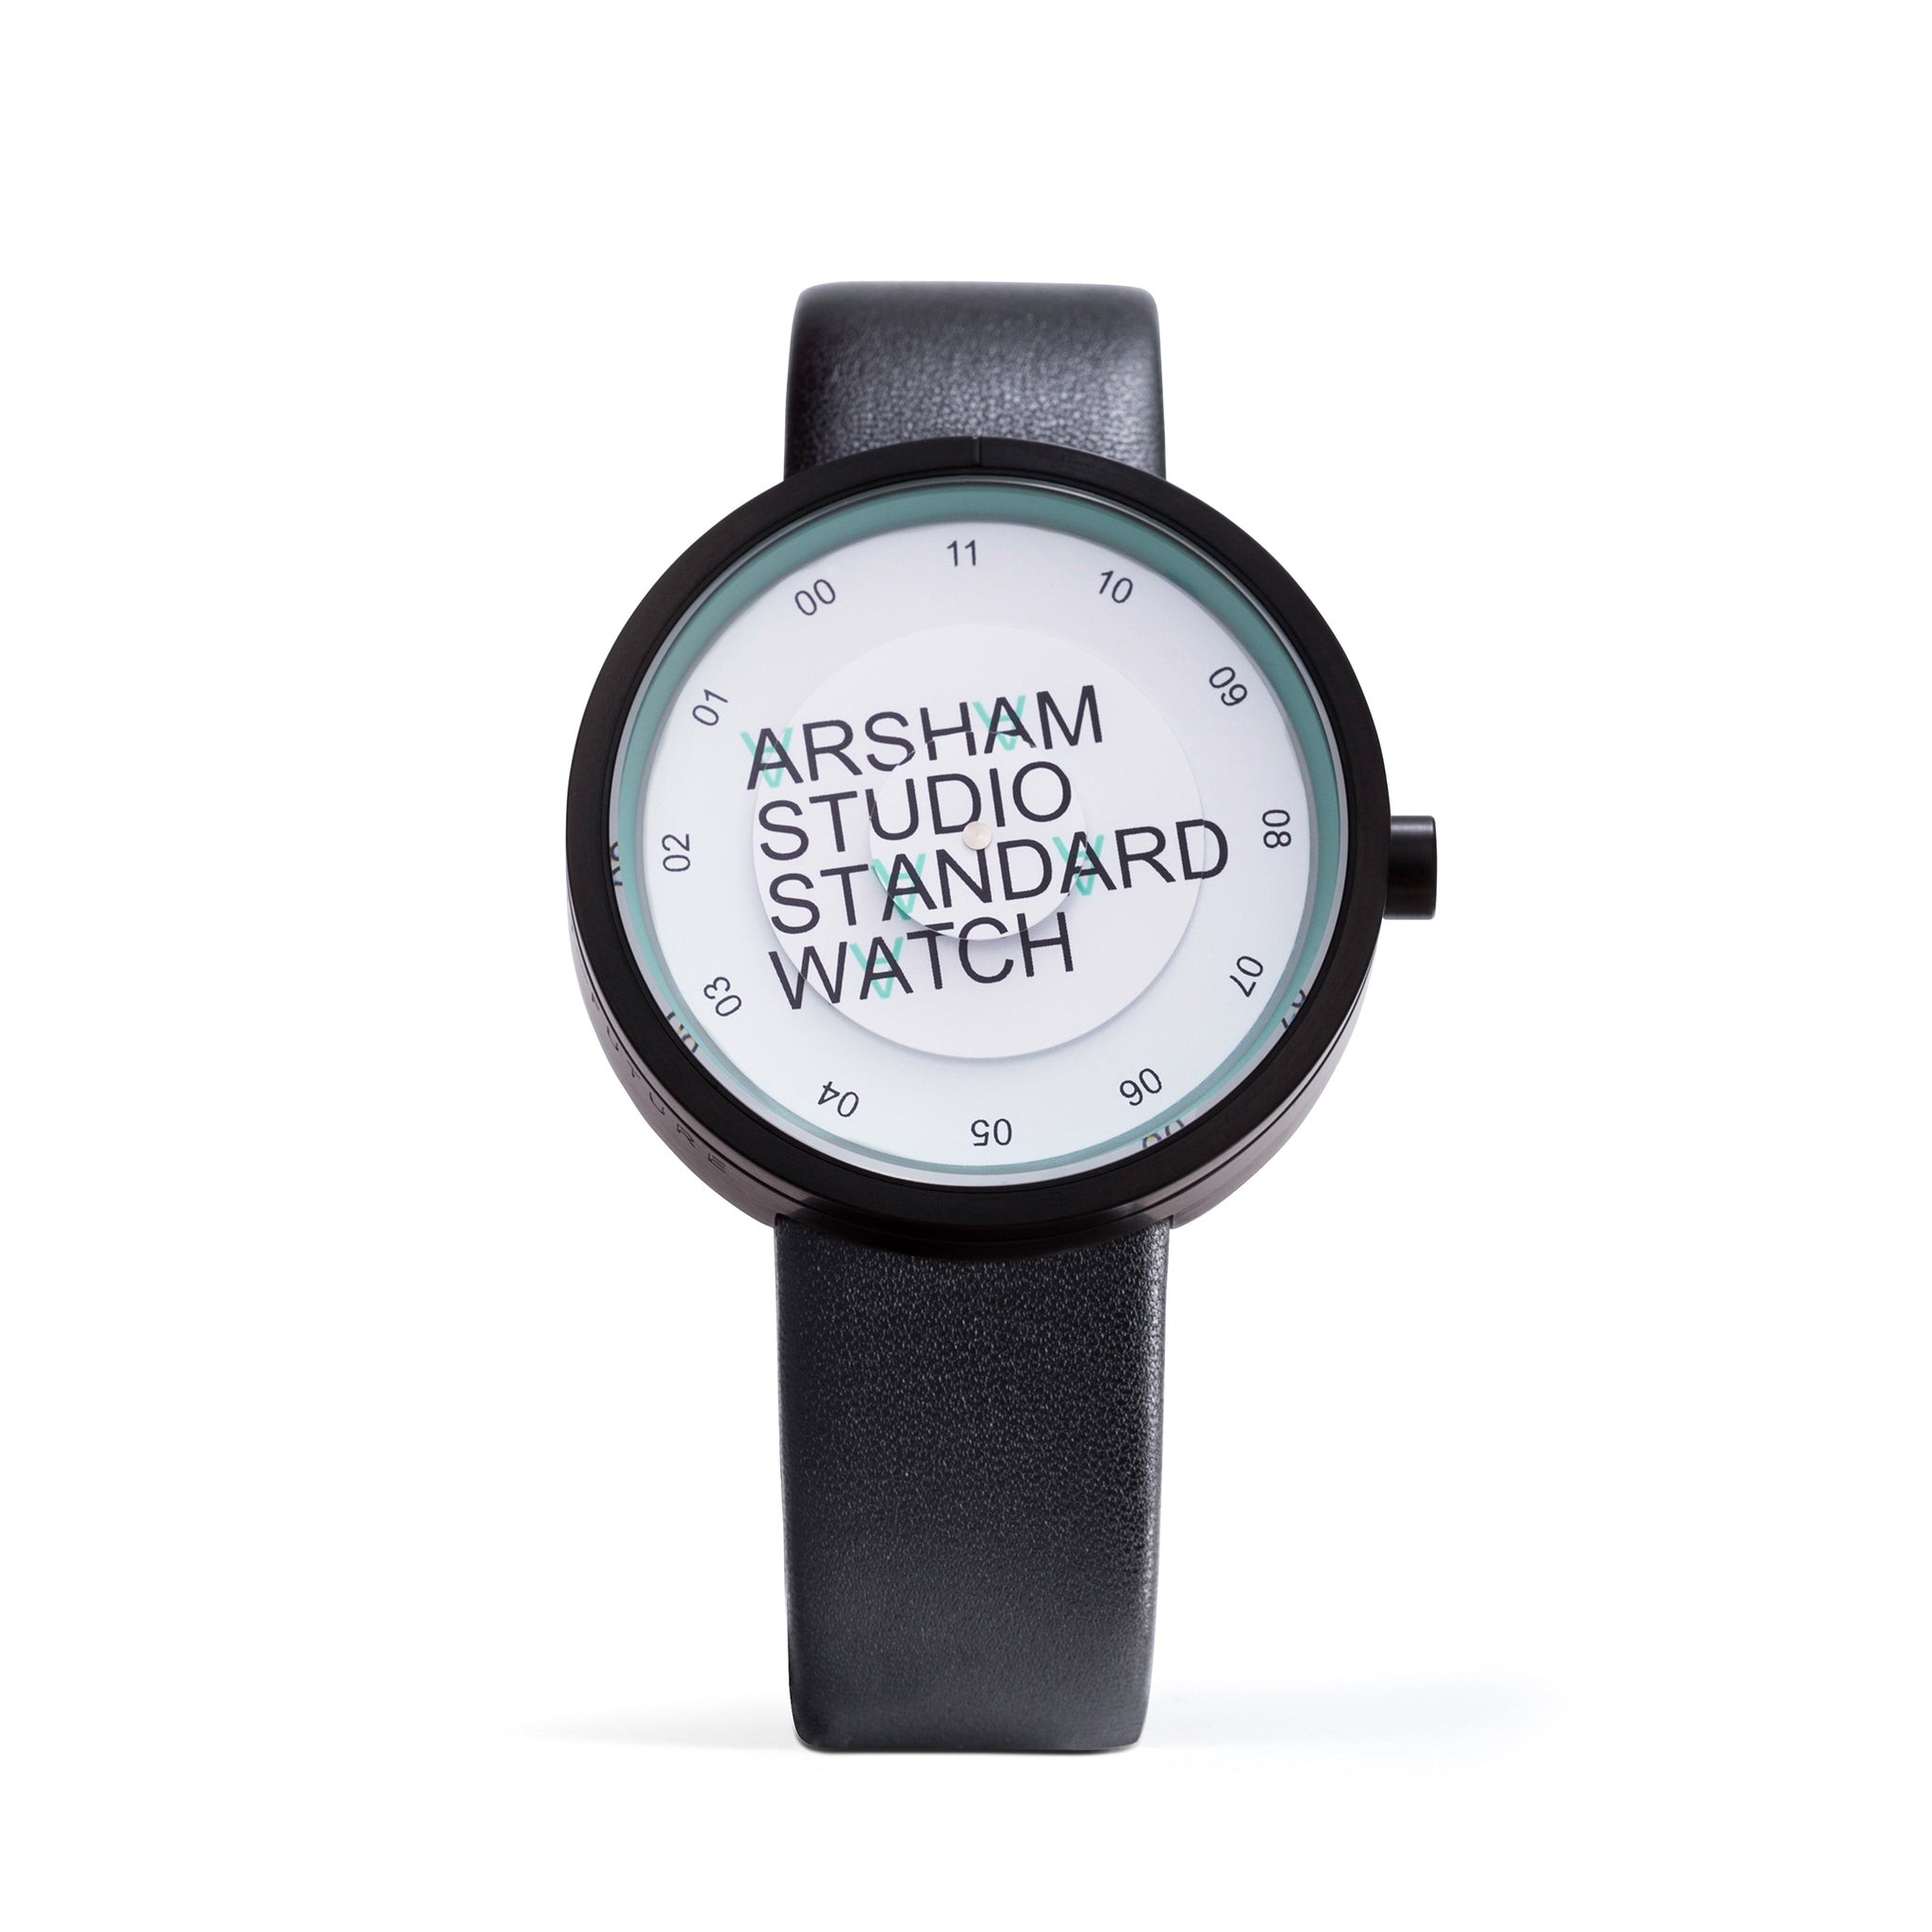 Arsham Studio Standard Watch